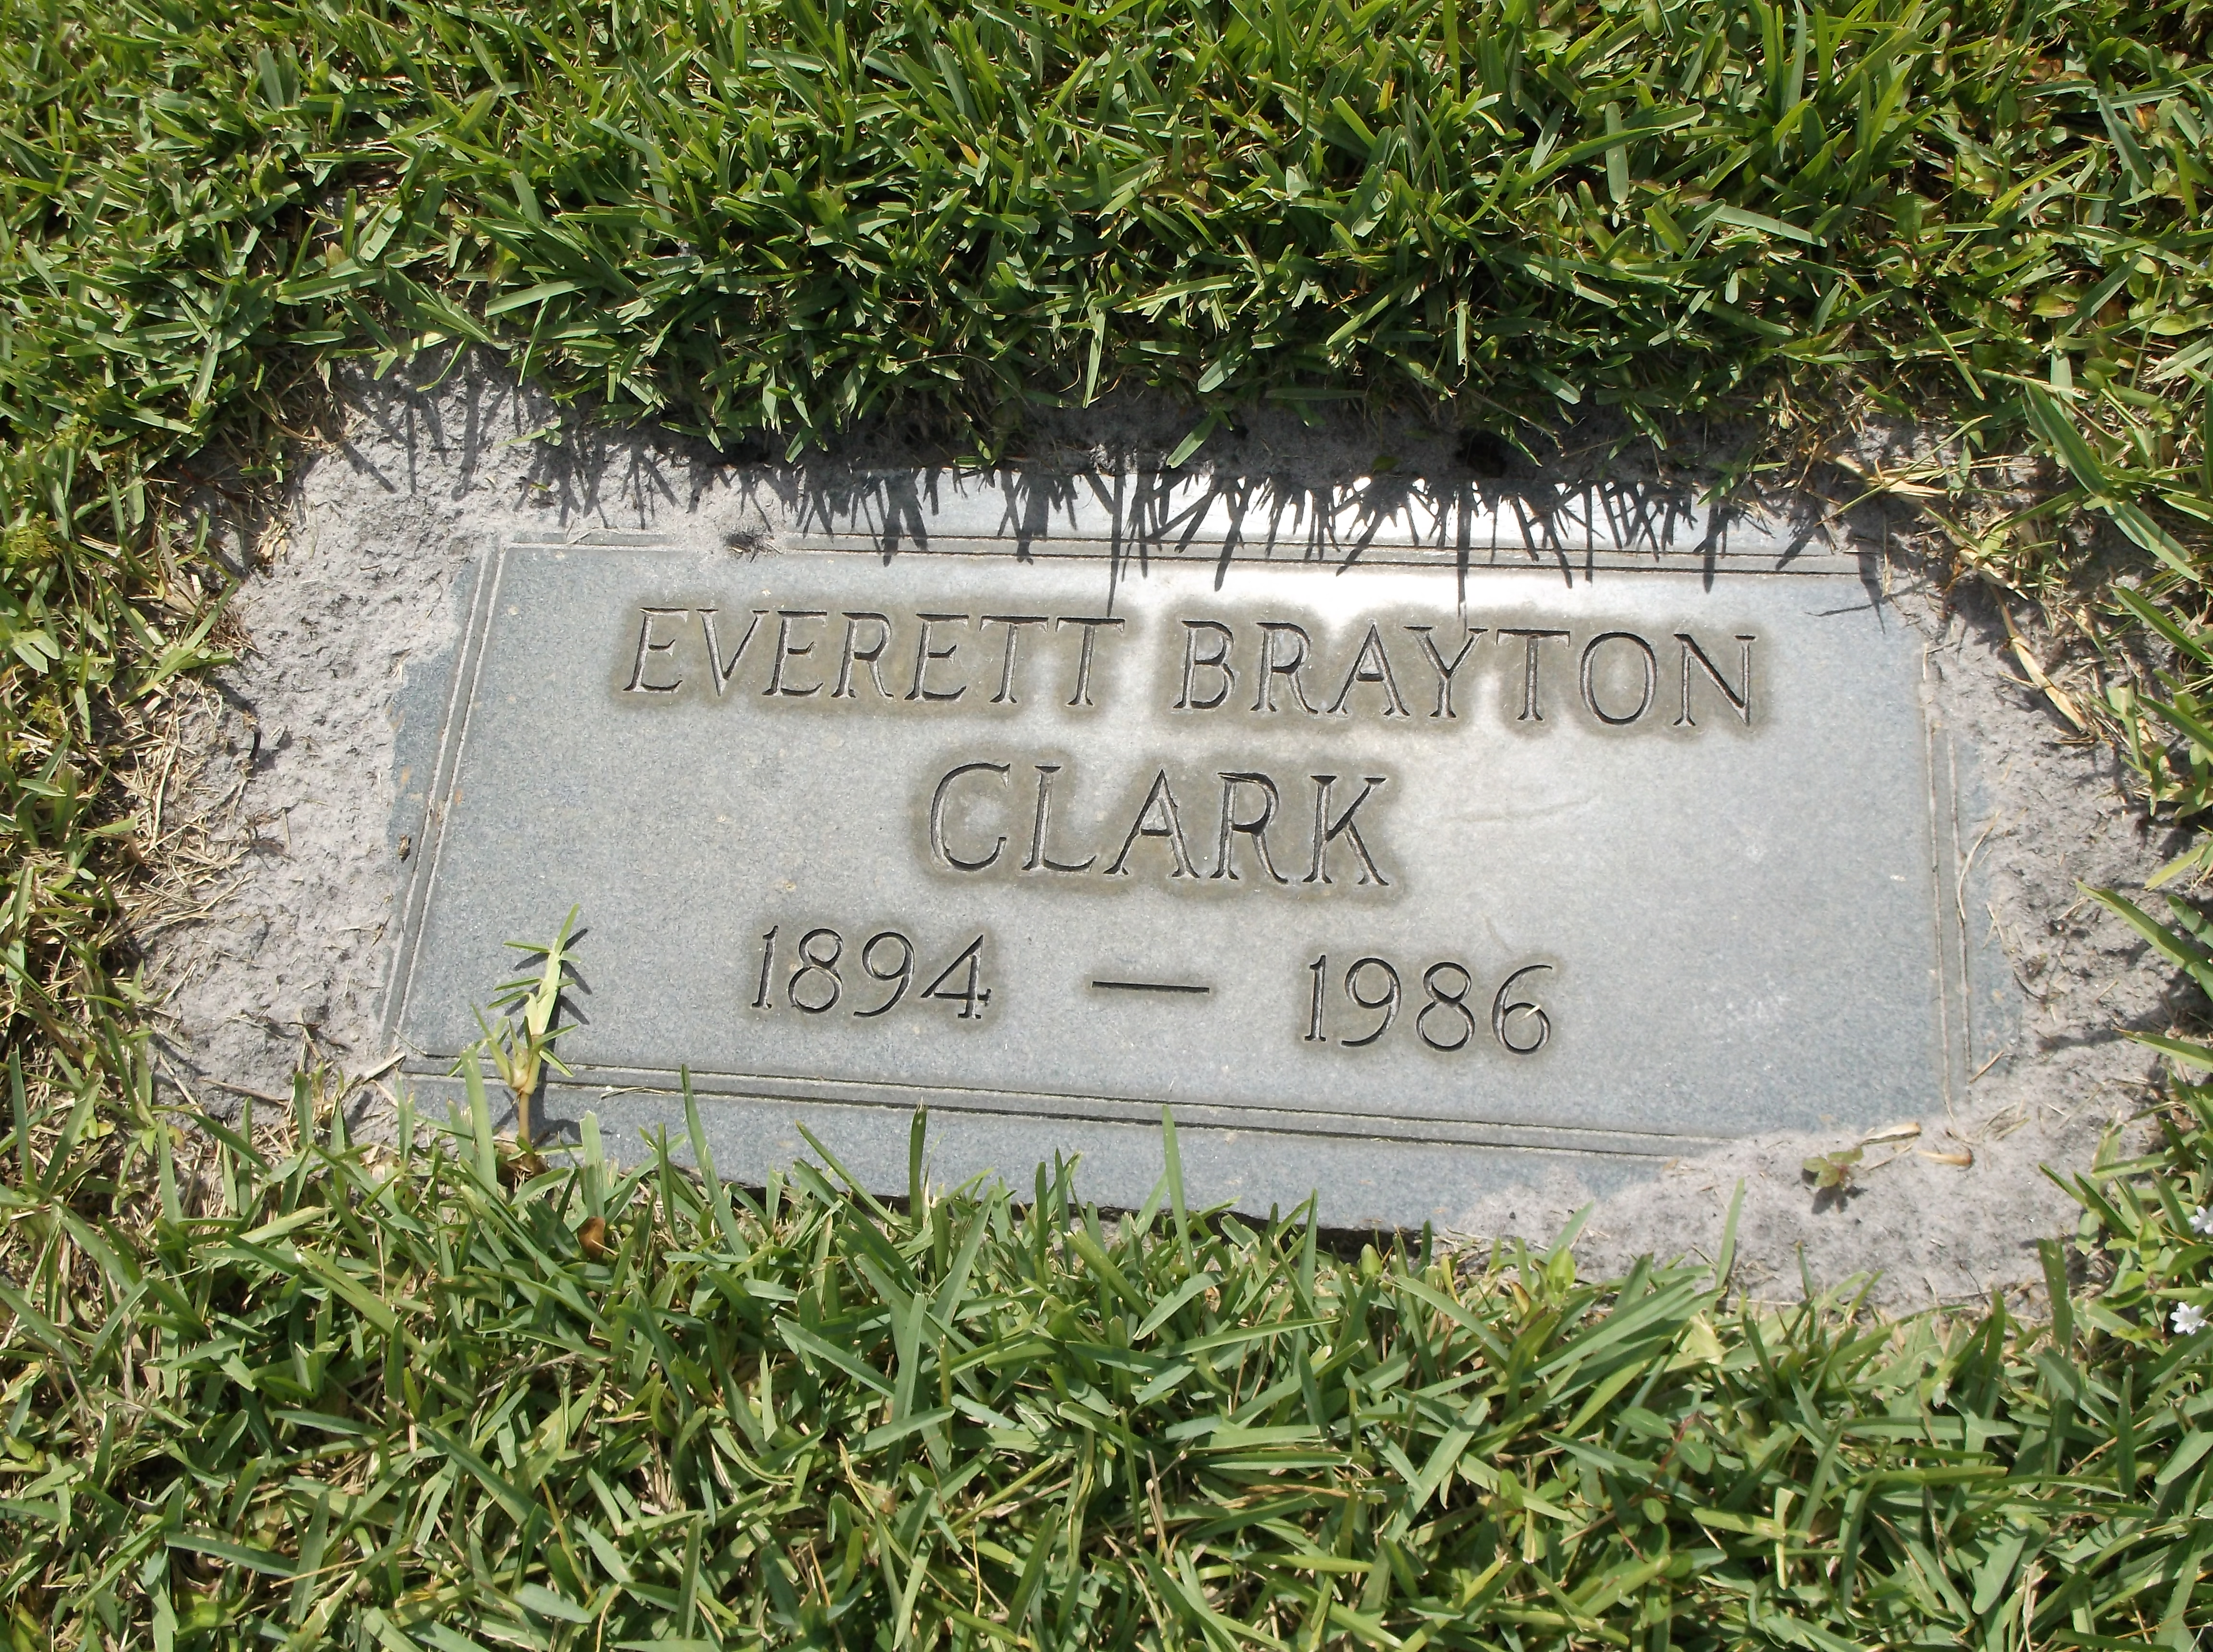 Everett Brayton Clark